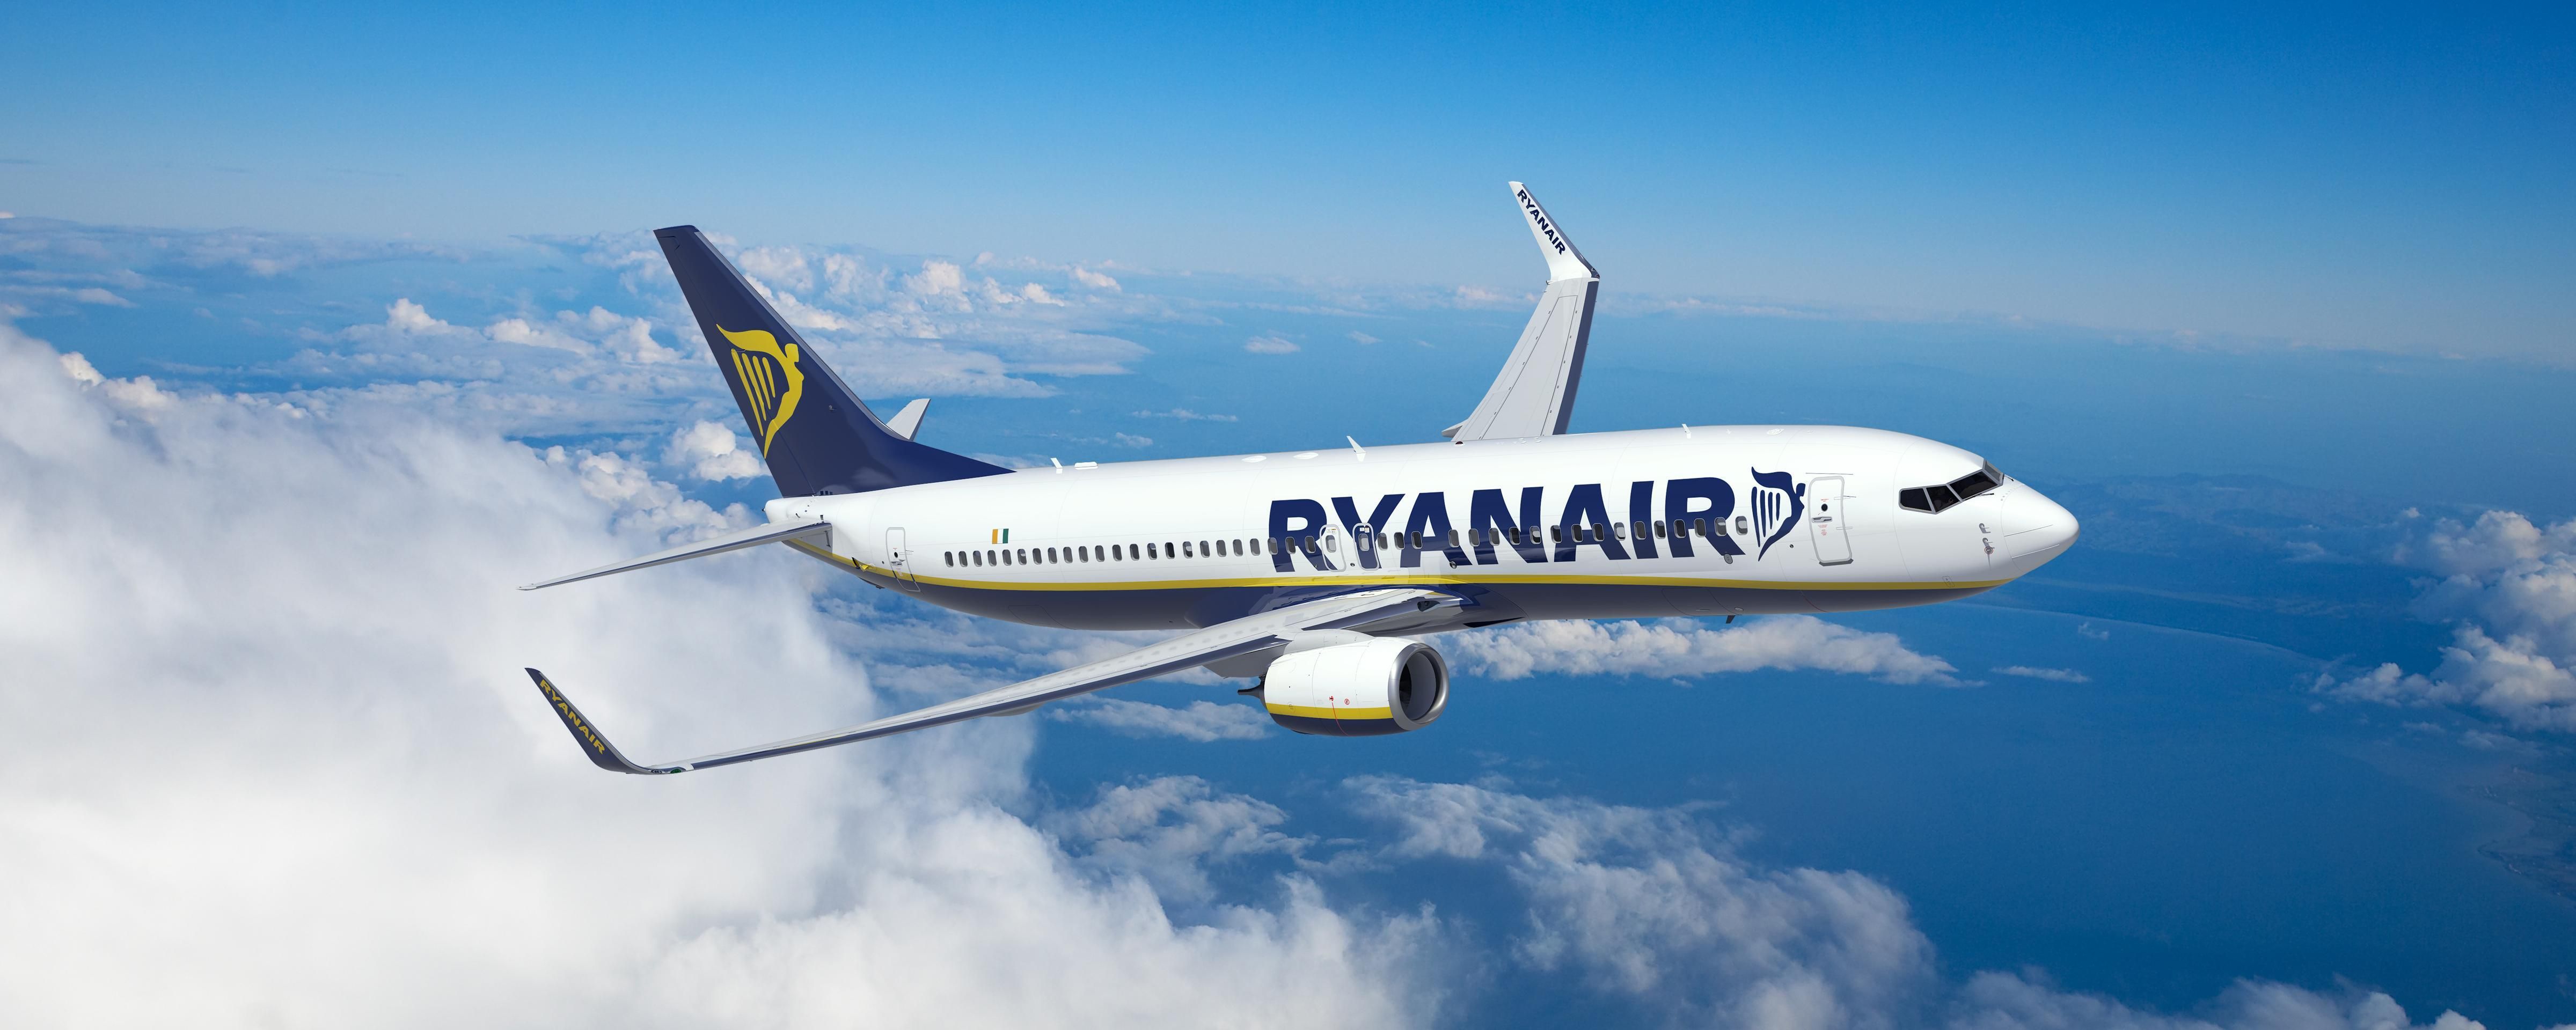 З Одеси до Будапешта за 15 євро: новий авіарейс від Ryanair